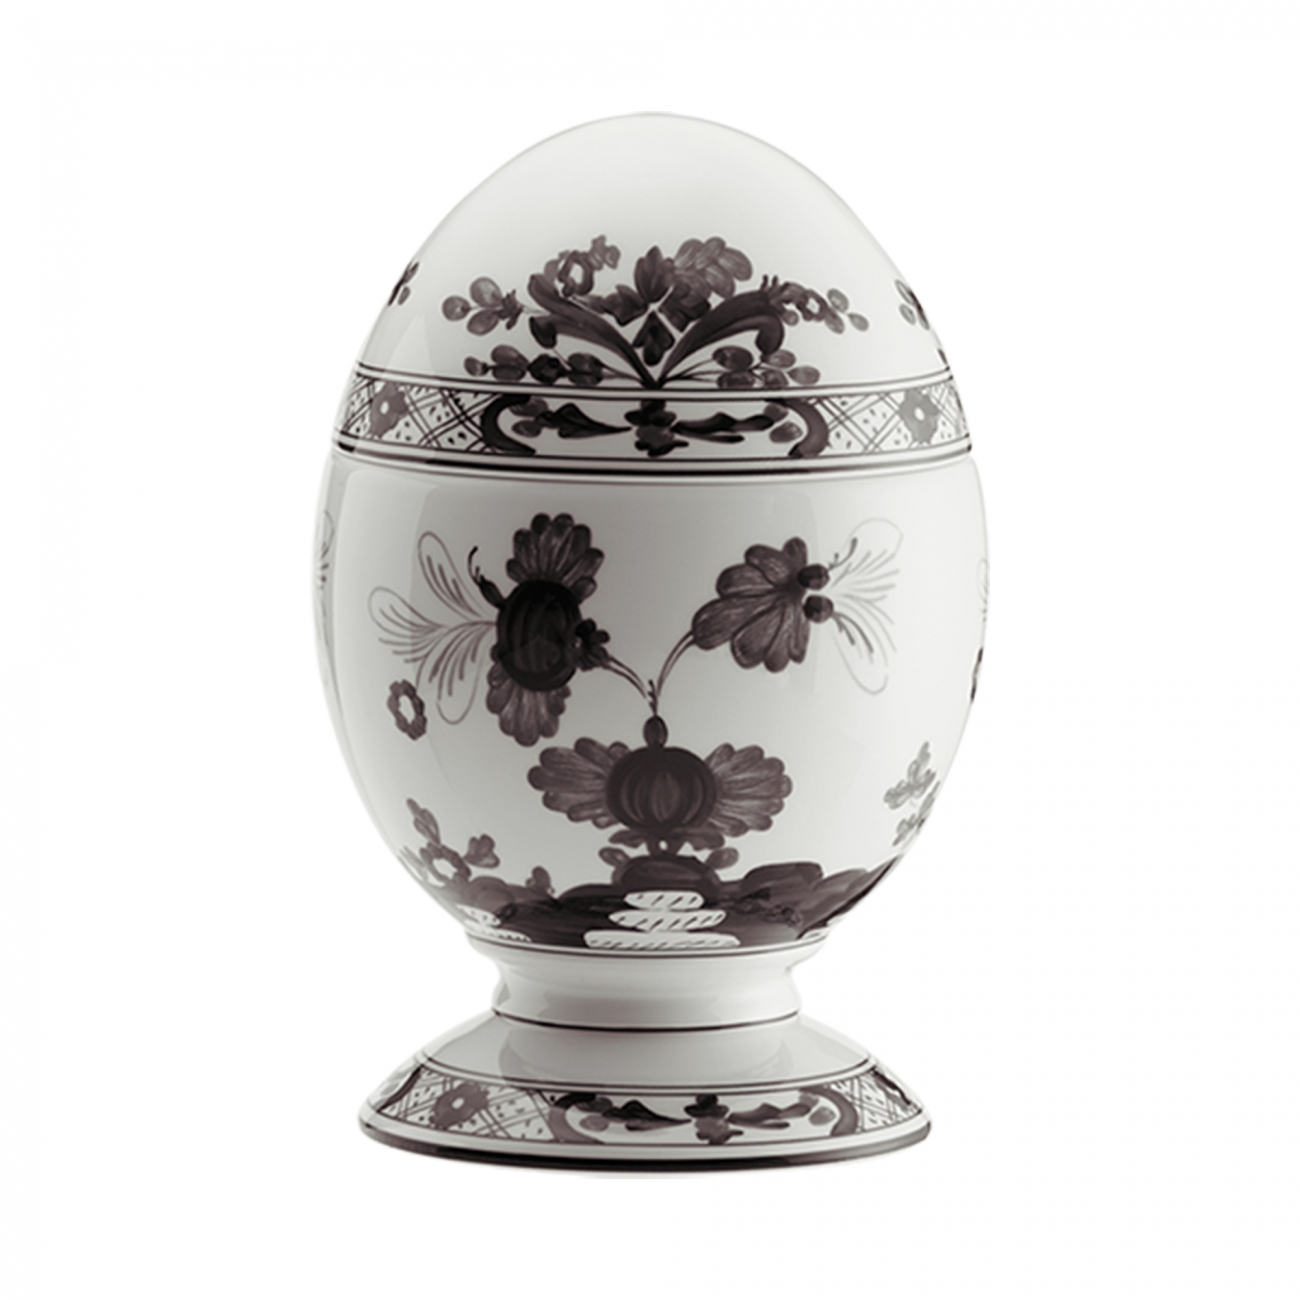 Ginori 1735 Oriente Italiano Egg with cover